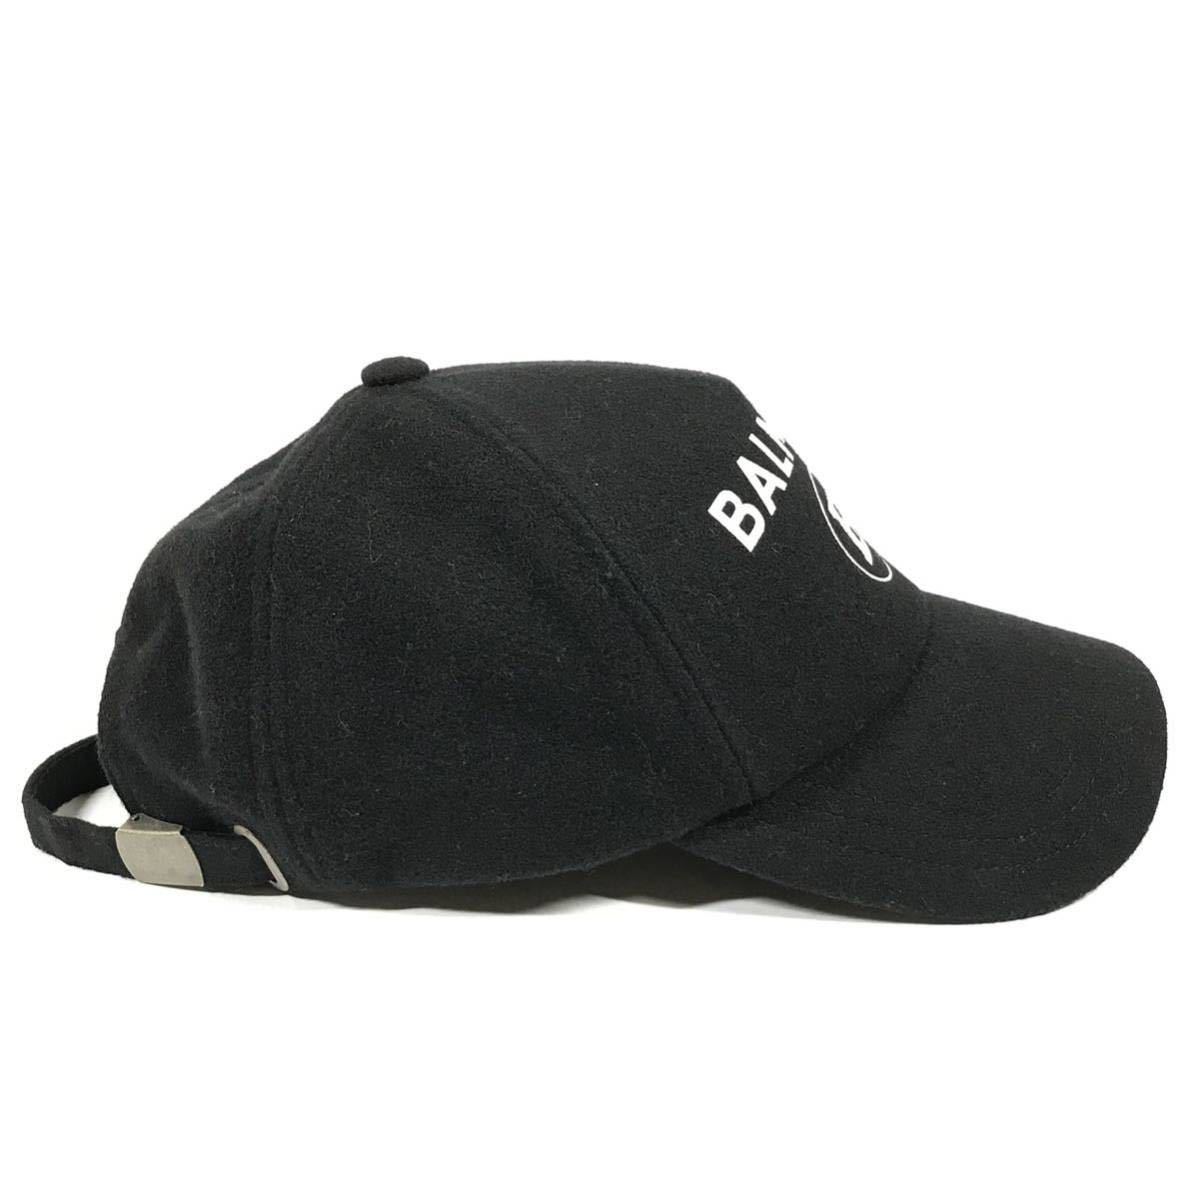 [ Balmain ] подлинный товар BALMAIN Baseball колпак Logo узор шляпа колпак шляпа размер TU мужской женский размер регулировка возможность 